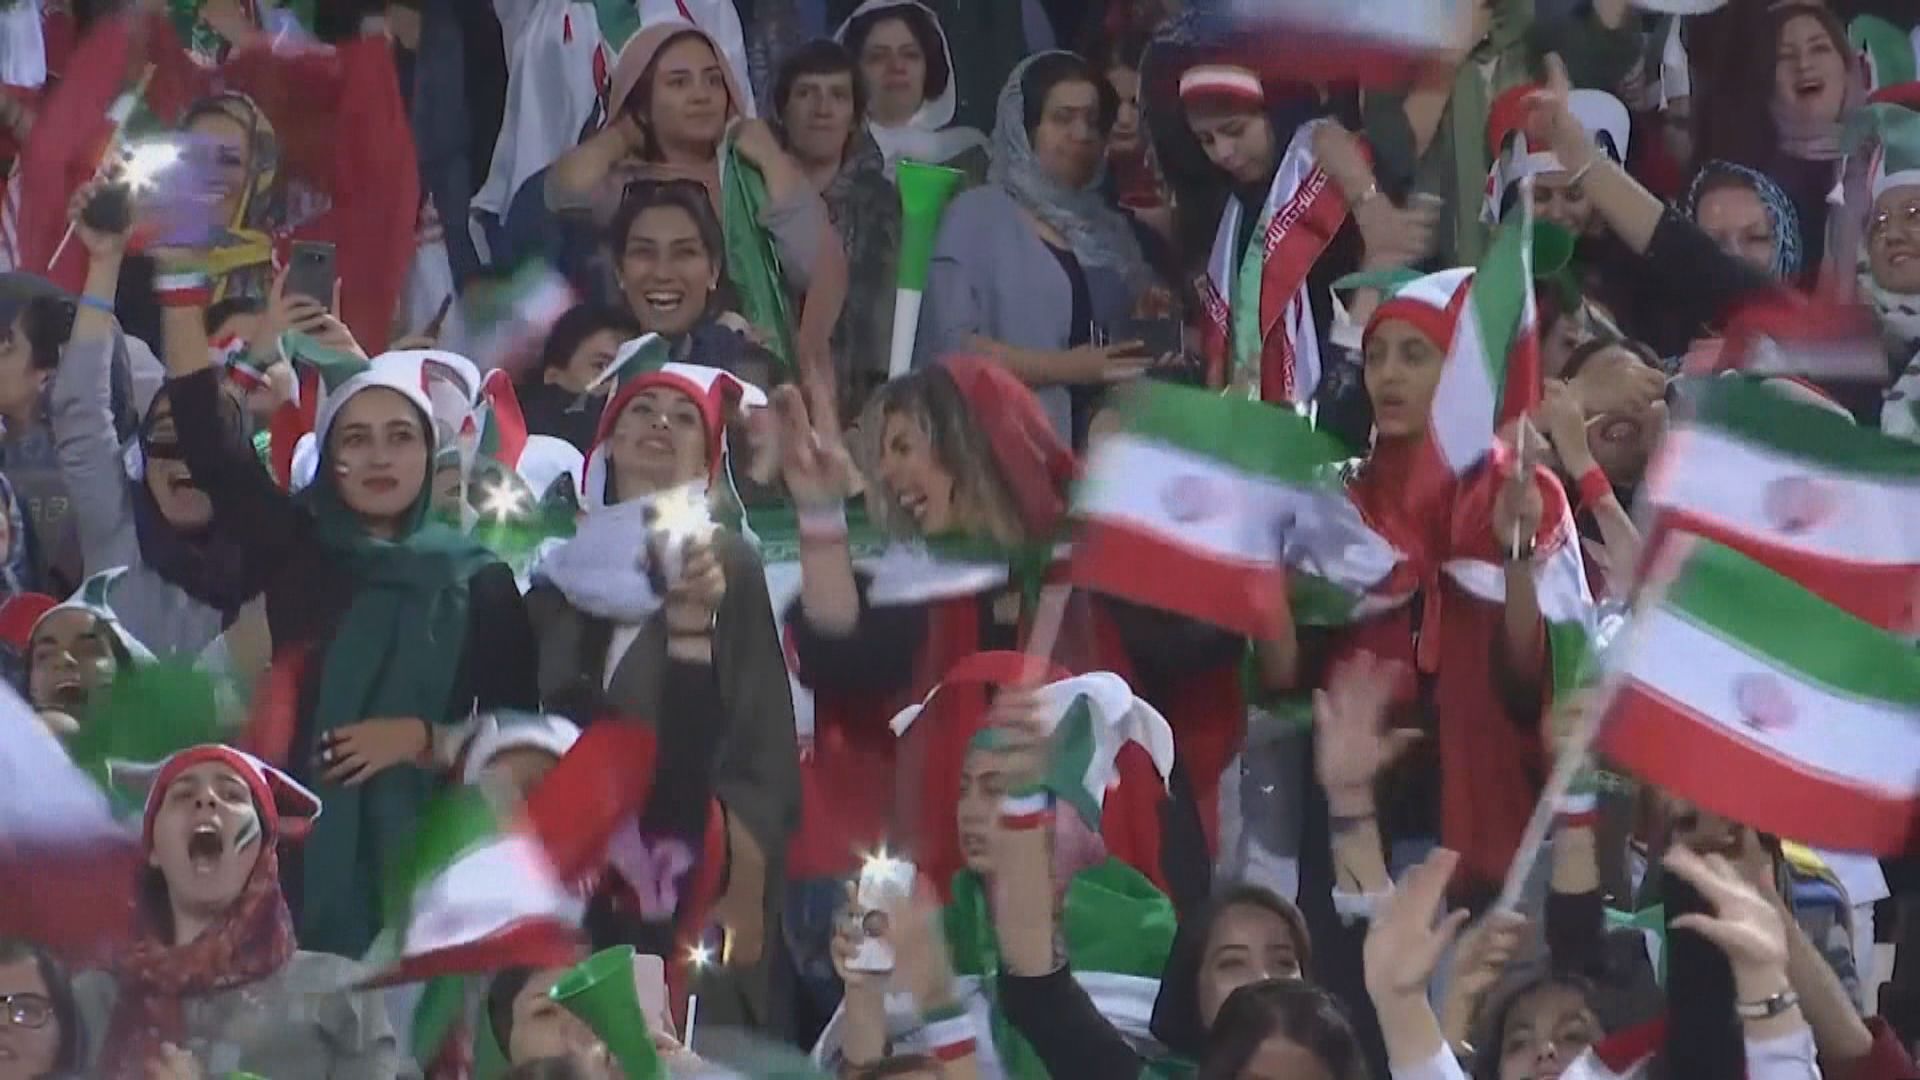 伊朗40年首次讓女性入場觀看男子足球賽